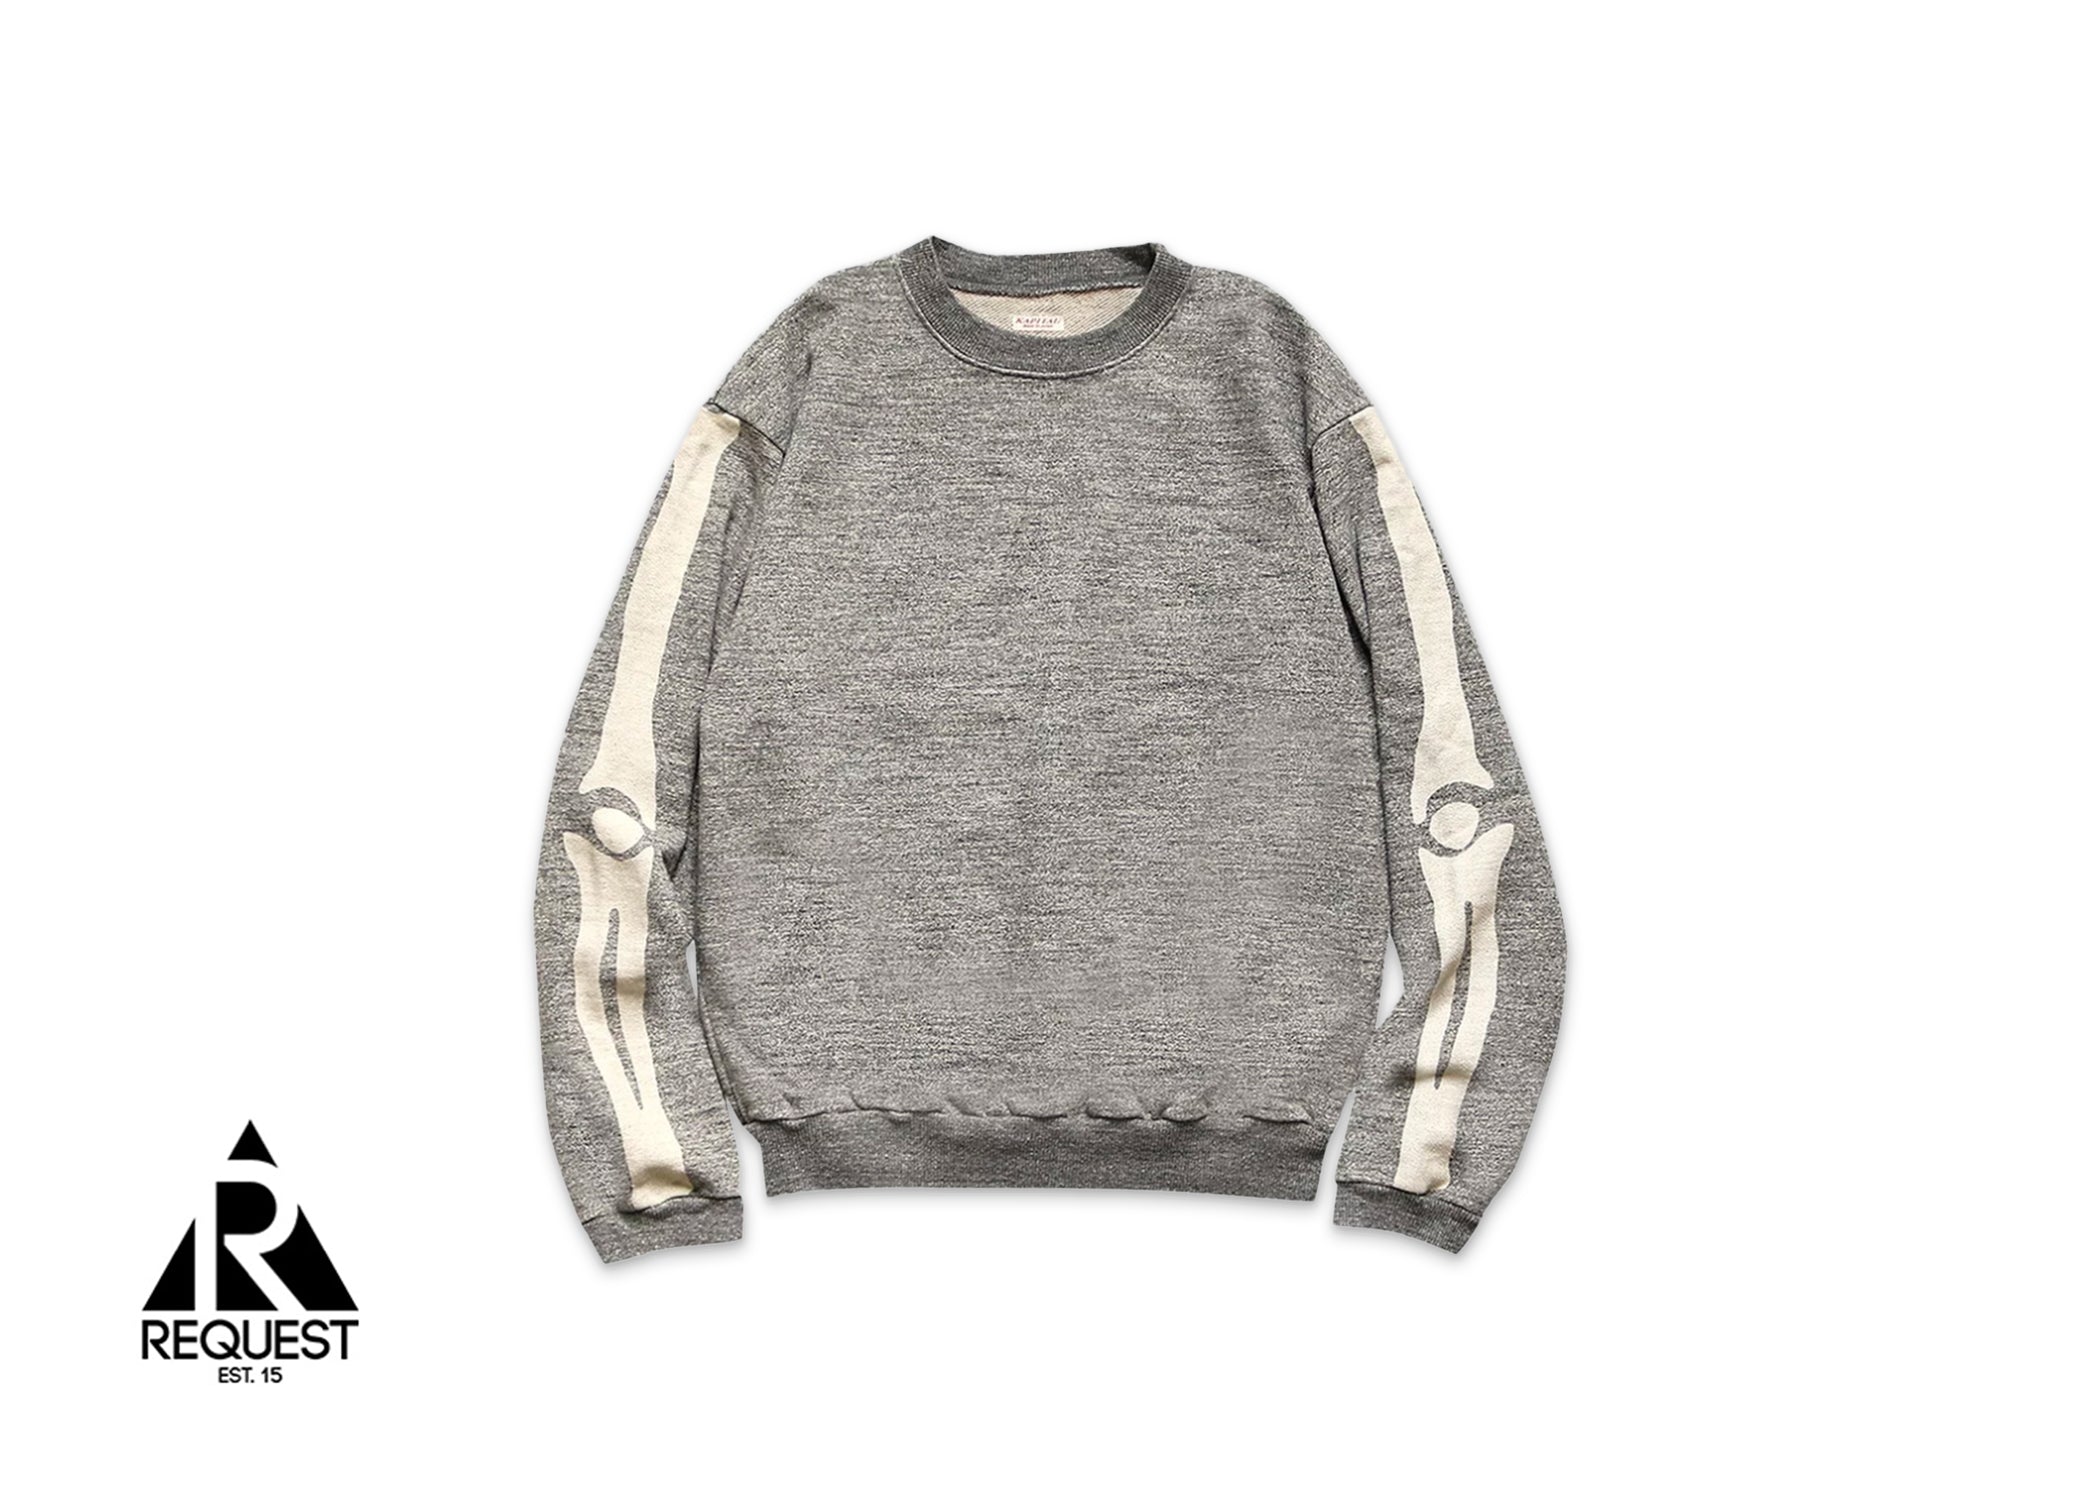 Kapital Grandrelle Fleece Knit Bone Sweater "Grey"